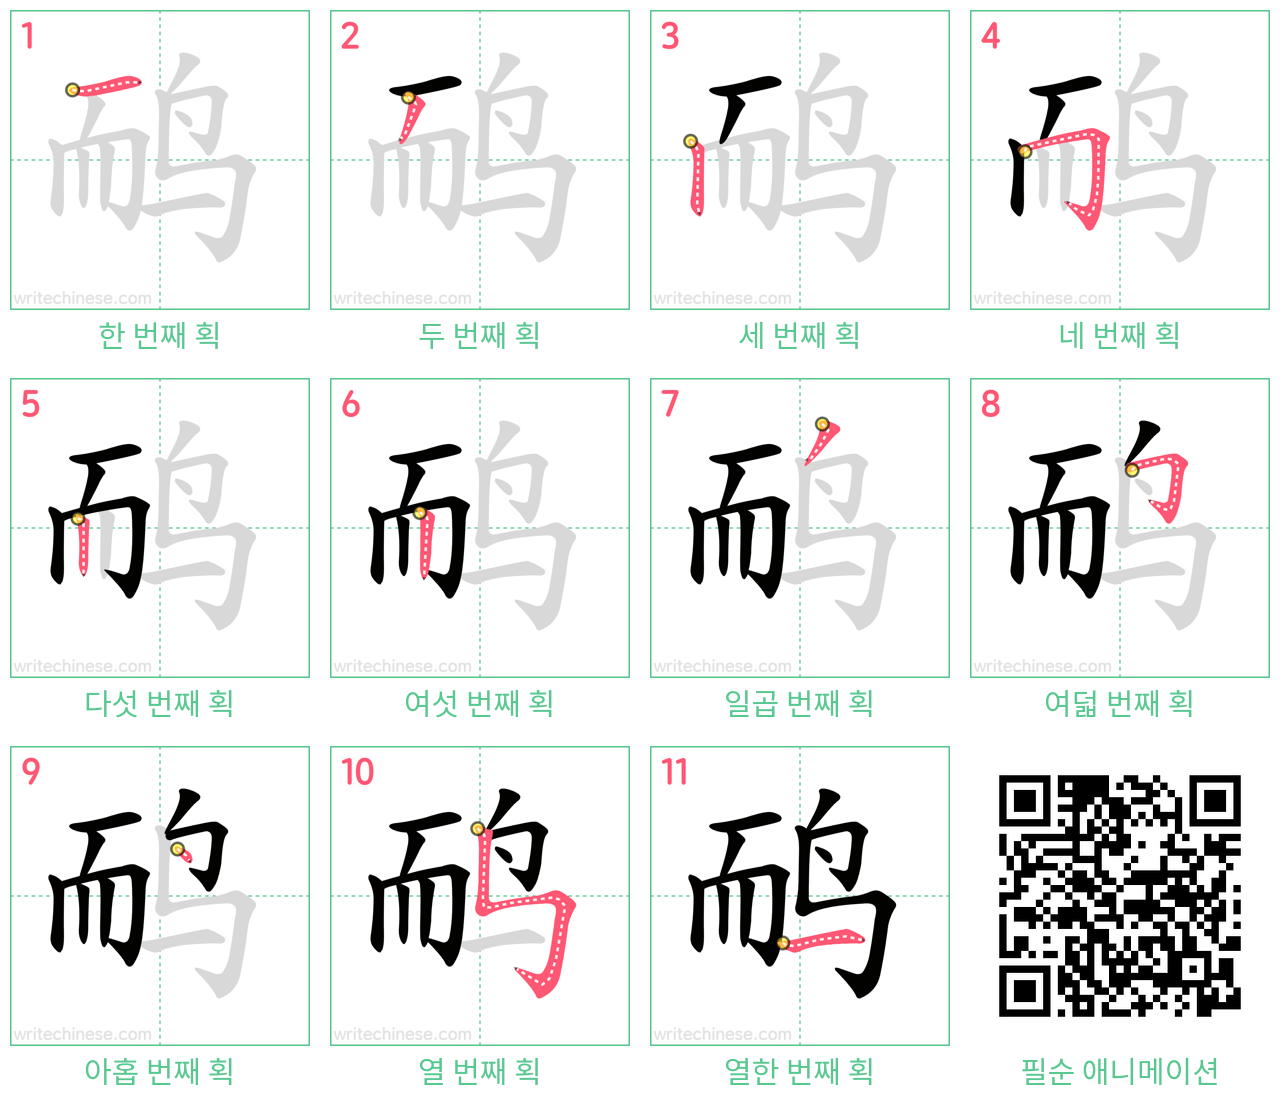 鸸 step-by-step stroke order diagrams